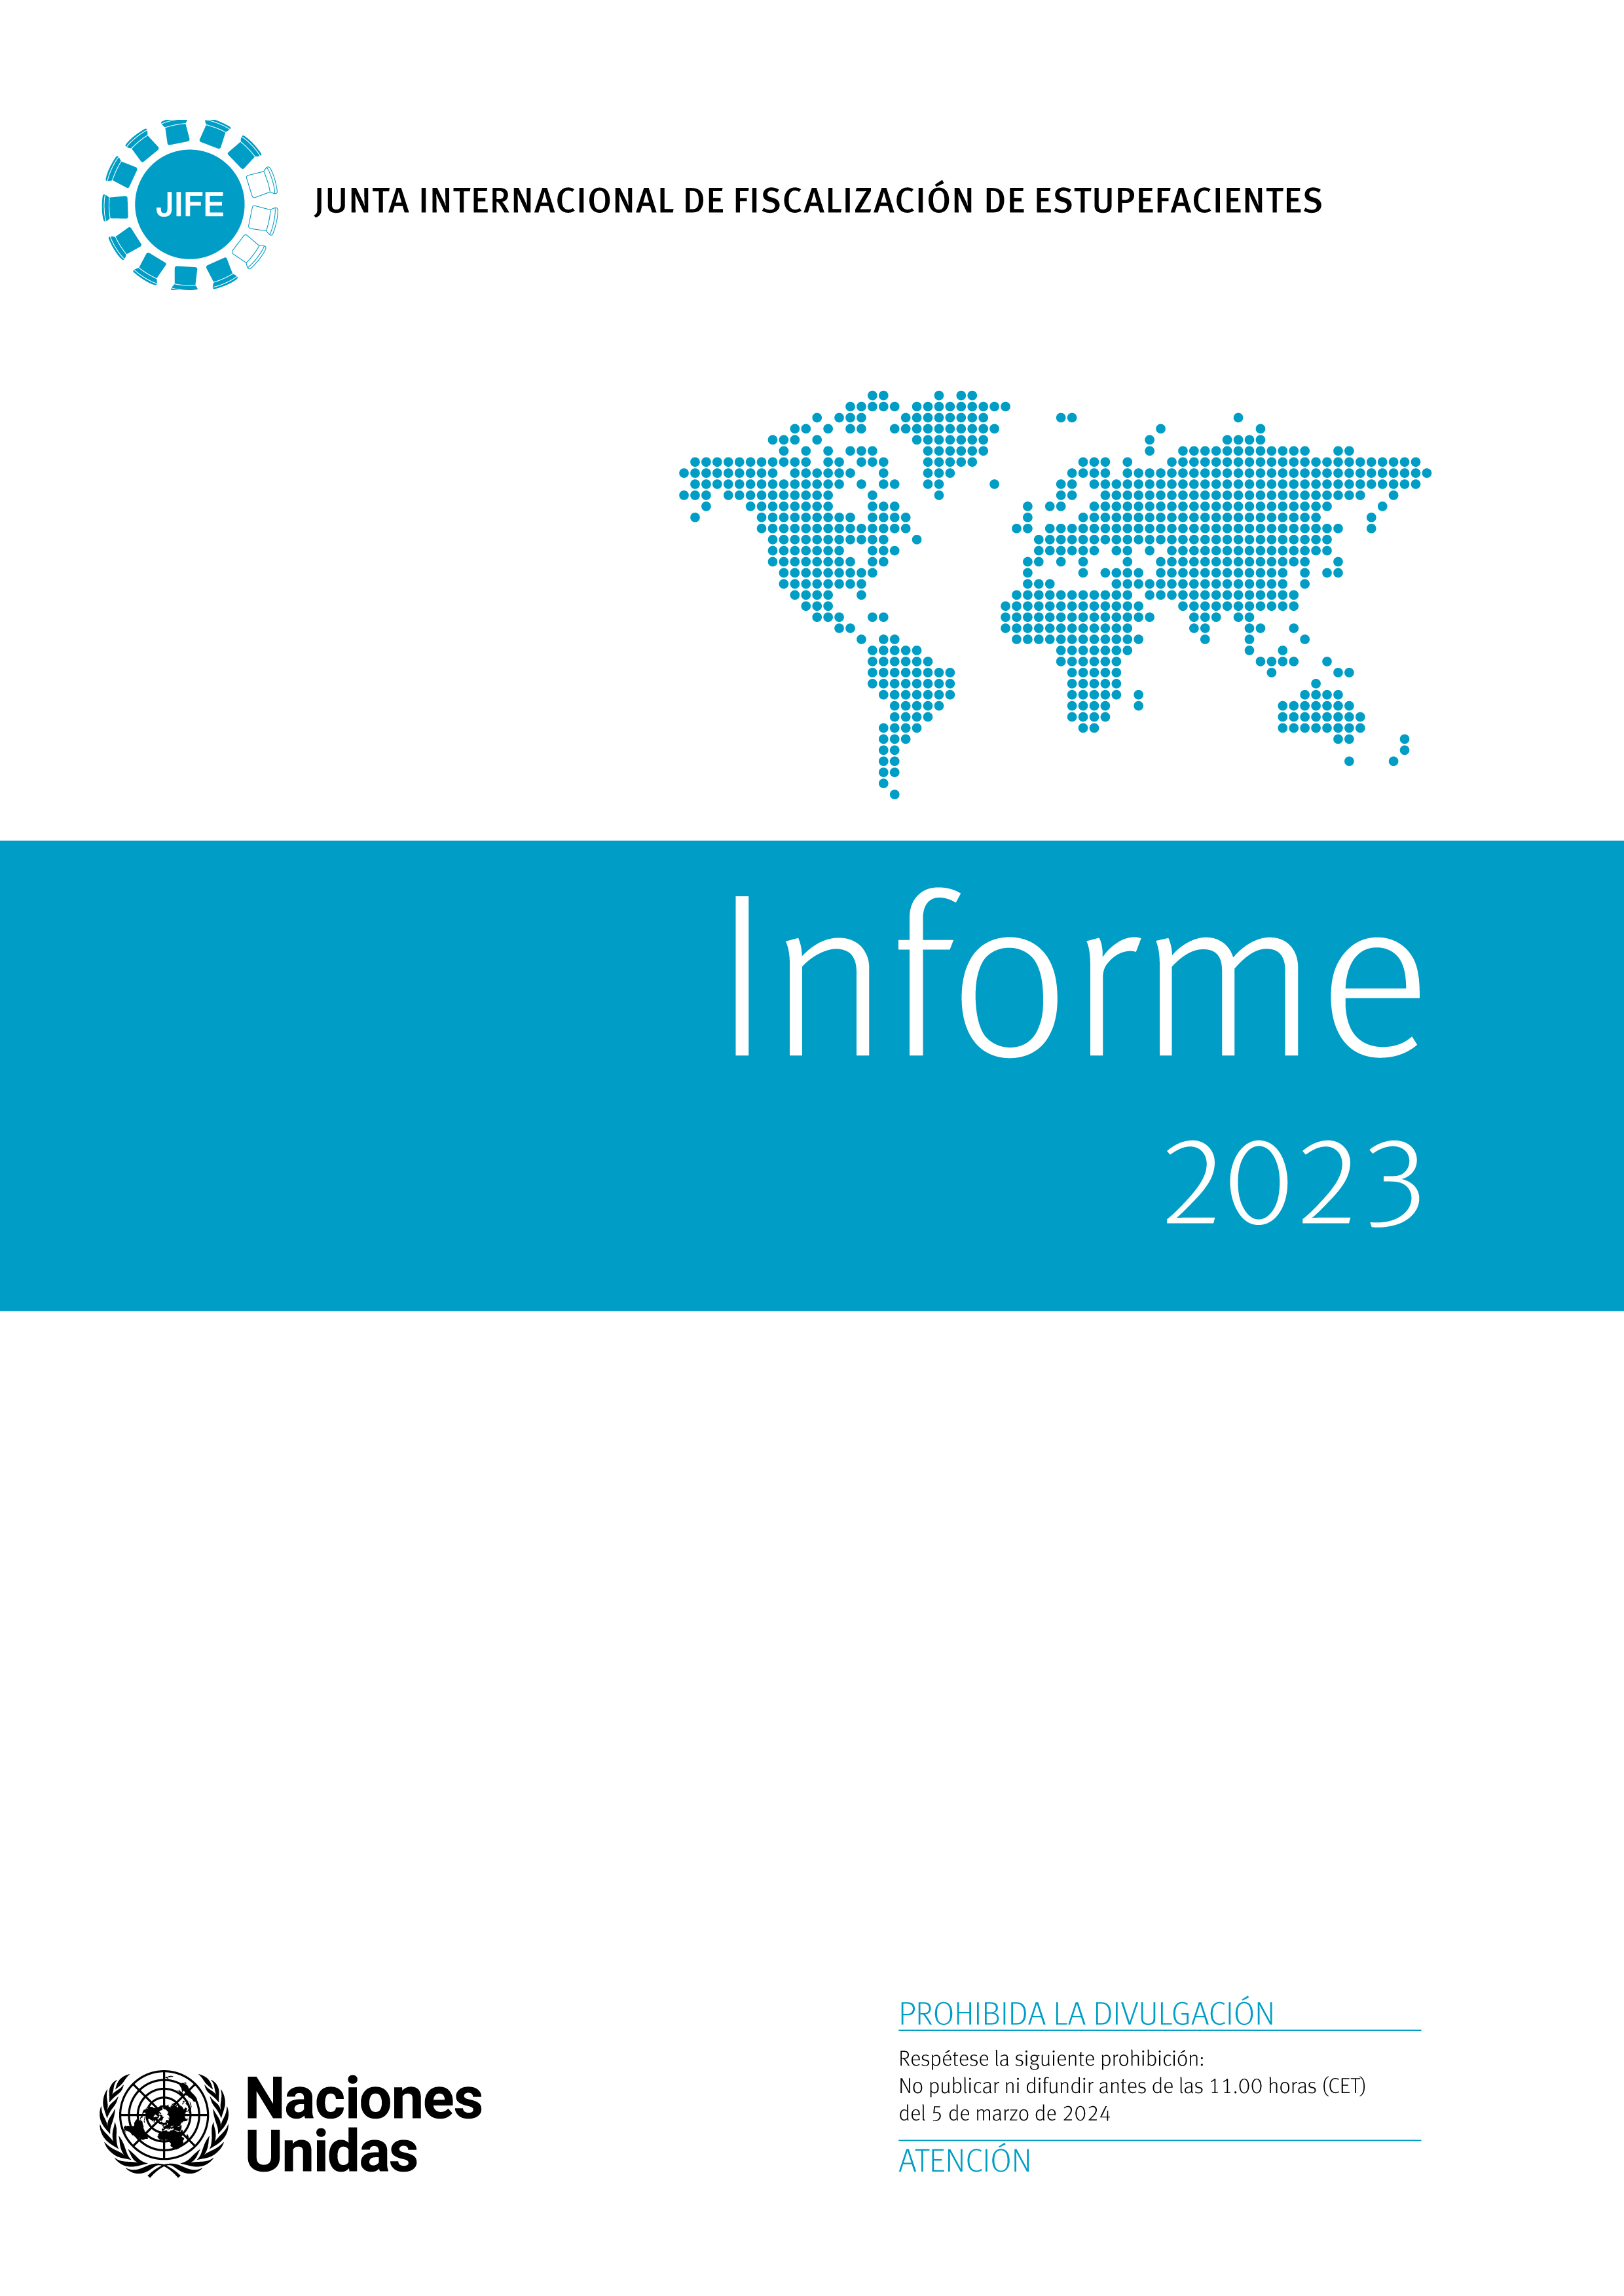 image of Informe de la Junta Internacional de Fiscalización de Estupefacientes correspondiente a 2023